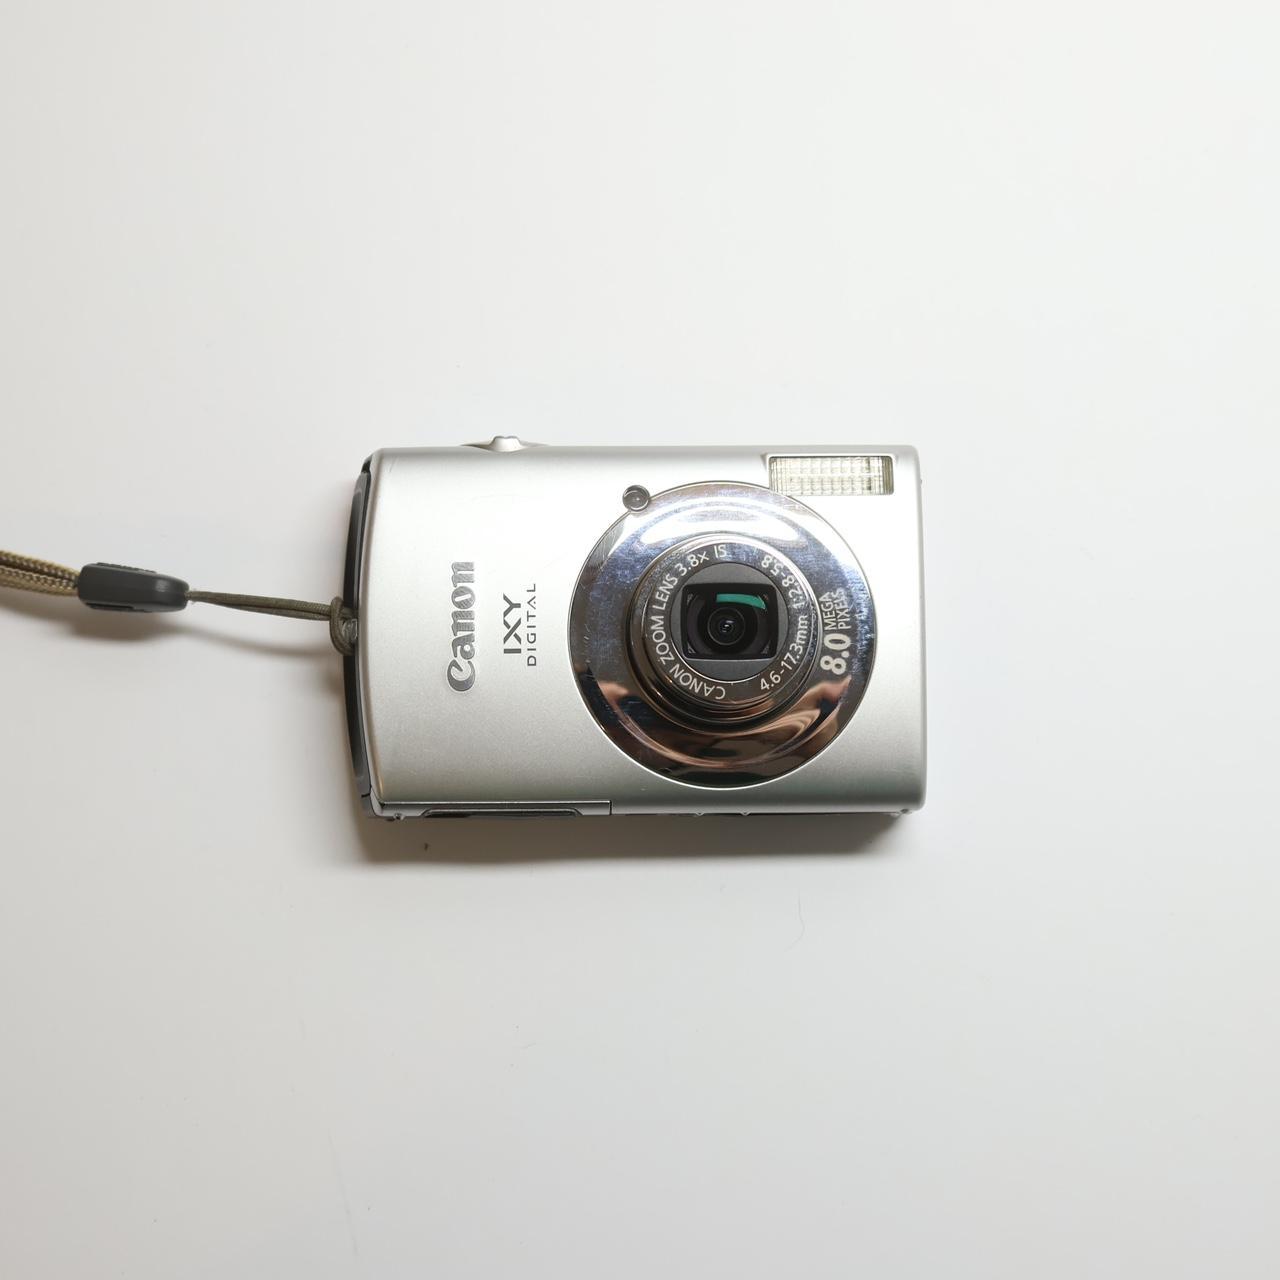 Canon IXY 910 IS Digital Camera, -, Vintage digital...